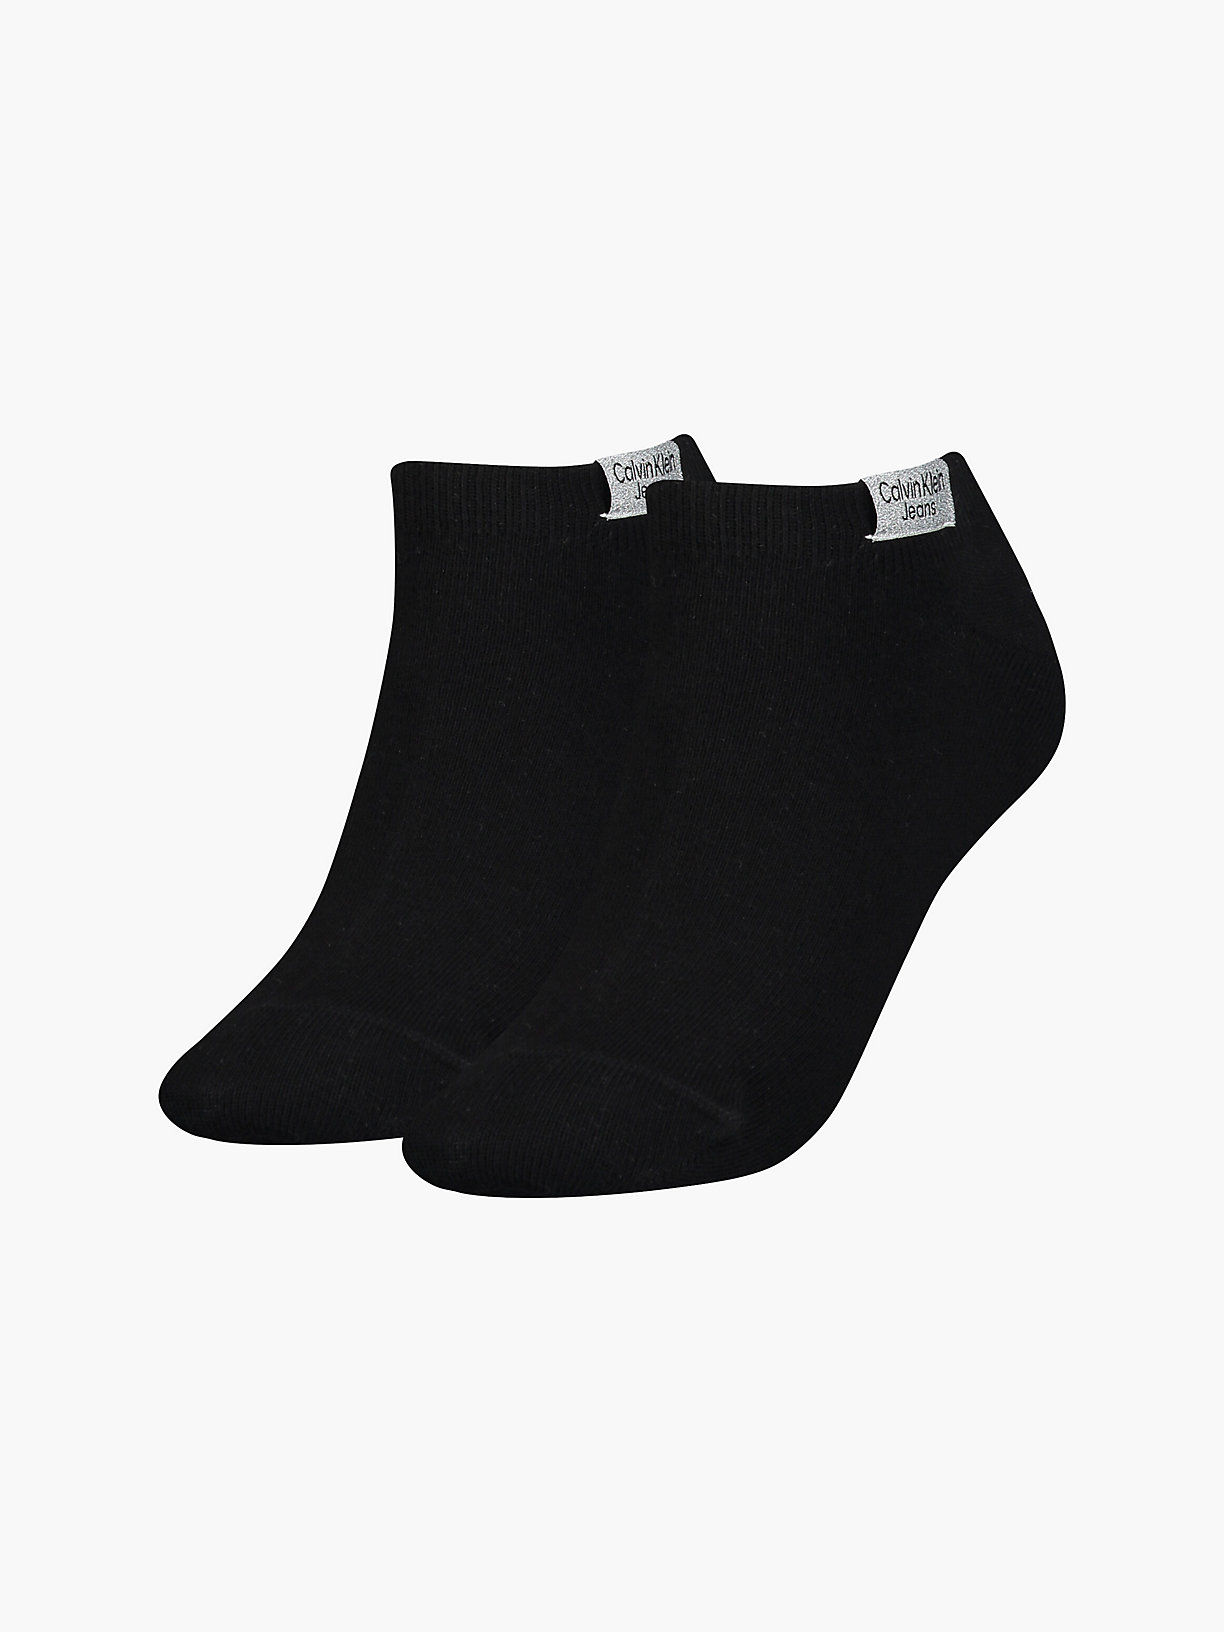 BLACK Lot de 2 paires de chaussettes de cheville avec logo for femmes CALVIN KLEIN JEANS